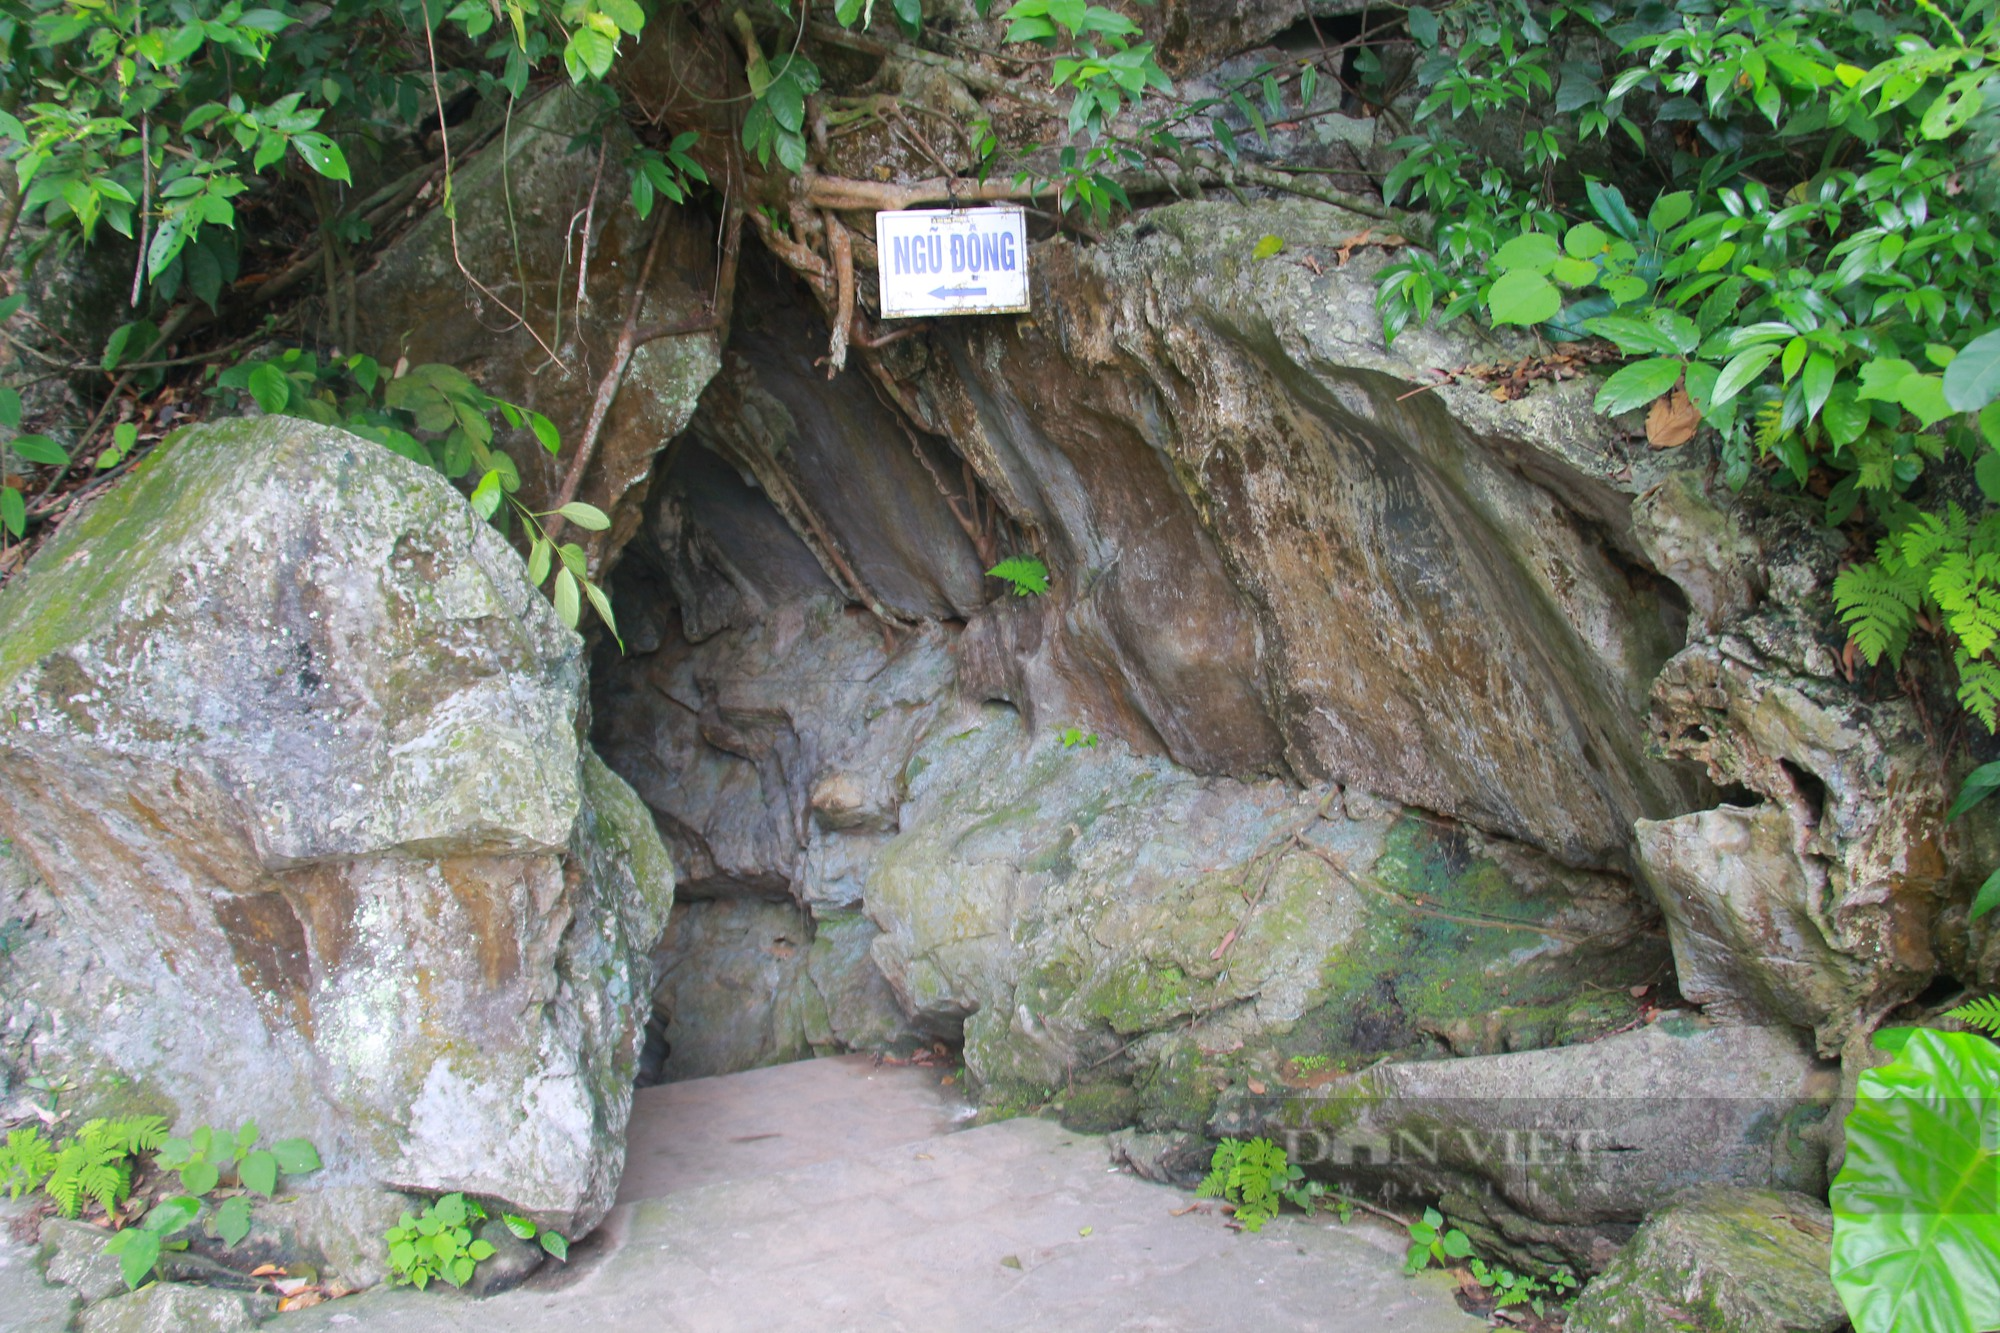 Khám phá đền Trúc - Ngũ động Thi Sơn ở Hà Nam (bài 2): Vố số thạch nhũ ẩn mình trong hang đá - Ảnh 2.